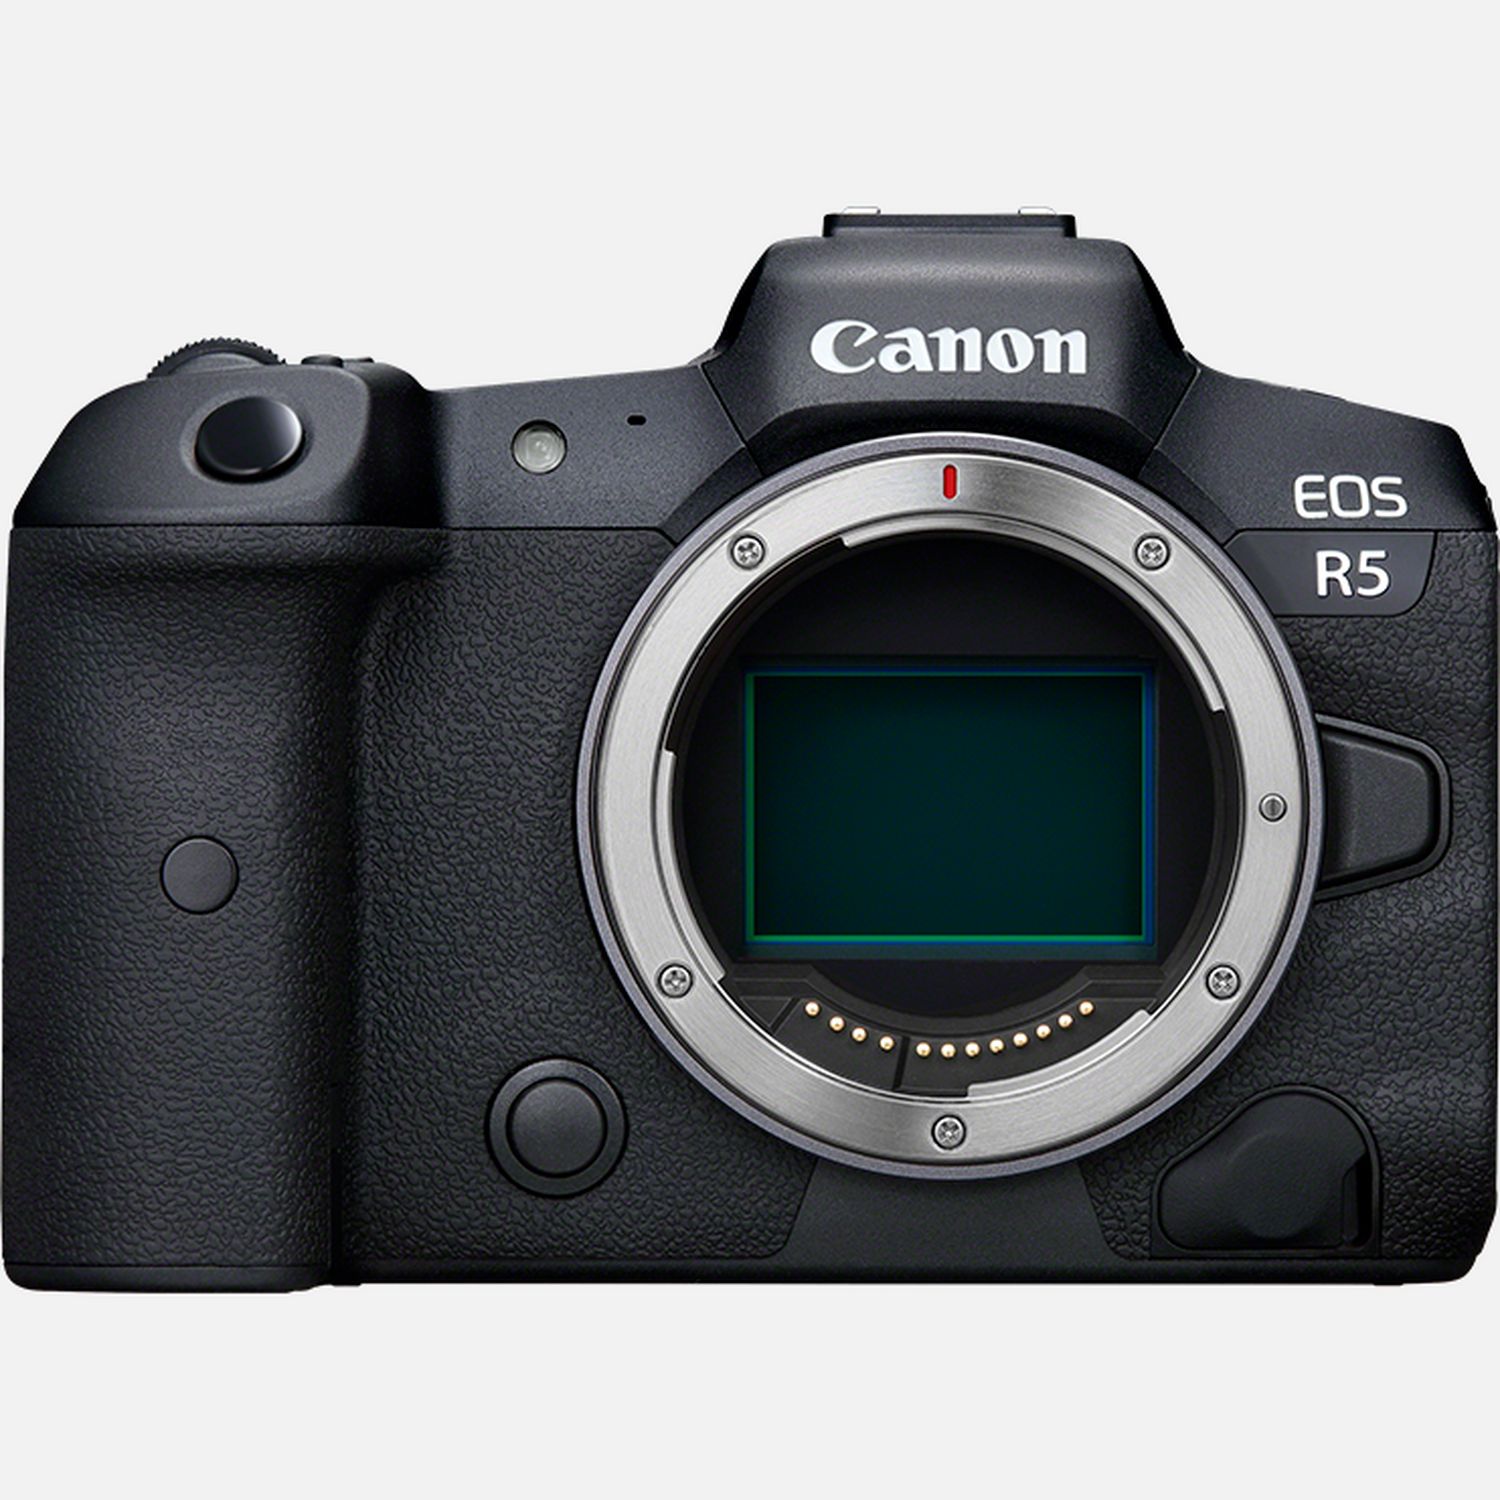 Egal was du aufnimmst  mit der Canon EOS R5 kannst du auf vllig neue Arten kreativ sein: mit 45-Megapixel-Fotos und bis zu 20 B/s bei Reihenaufnahmen mit elektronischem oder bis zu 12 B/s mit mechanischem Verschluss und mit Vollformat 8K-Videos im RAW-Format. Diejenigen, die Portrt-, Reise- und Hochzeitsaufnahmen machen, werden das AF-System der Kamera lieben  es wurde mit Hilfe von Deep-Learning KI programmiert, um Kpfe, Gesichter und Augen von Menschen erkennen und den Fokus przise nachzufhren. Die EOS R5 erkennt auch Katzen und Hunde und sogar Vgel  ideal fr die Tierfotografie. Auergewhnliche 12 Bit 8K RAW-Videos knnen aufgenommen werden, und das 4:2:2 10 Bit 4K-Material mit Bildraten bis zu 120 B/s eignet sich fr hervorragende Zeitlupenaufnahmen. Mit der Drahtlos-Technologie kannst du Aufnahmen direkt auf image.canon, einen FTP-Server und auf ein Mobilgert bertragen.                                                                              Groer Dynamikumfang bei allen Lichtverhltnissen                             Mit 45-Megapixel-Fotos im Vollformat hltst du feinste Details fest und erhltst einen beeindruckenden Dynamikumfang. Die maximale ISO-Empfindlichkeit von ISO 51.200 und ein bis -6 LW arbeitender AF sorgen bei dieser spiegellosen Vollformatkamera fr erstklassige Low-Light-Eigenschaften                                                           Deine Geschichte festhalten, egal welches Motiv                             Ob Hochzeits-, Portrt-, Reise-, Fotojournalismus- oder Landschaftsfotografie  diese spiegellose 8K-Kamera ist fr jeden Einsatzbereich ideal. Dank ihrer Reihenaufnahmen mit bis zu 20 B/s ist sie auch ideal fr die Wildlife- und Sport-Fotografie                                                                                                                              Zeit einfrieren mit 20 B/s                             Zum Festhalten flchtiger Augenblicke bietet die Kamera bis zu 20 B/s mit dem geruschlosen elektronischen Verschluss und bis zu 12 B/s mit mechanischem Verschluss  bei voller AF-Nachfhrung mit einer Fokussiergeschwindigkeit von nur ca. 0,05 Sek. Der Highspeed DIGIC X Prozessor ermglicht eine Bildverarbeitung auf neuem Niveau                                                           Ruhig, leise und diskret sein                             Ganz neue Mglichkeiten fr lange Belichtungszeiten: Die EOS R5 bietet einen kamerainternen 5-achsigen Bildstabilisator der zusammen mit einem Objektiv mit optischem Bildstabilisator bis zu 8 Stufen Stabilisierung ermglicht. Ein neuer leiser Verschluss ermglicht unaufflliges Fotografieren                                                                                                                              Auf die wirklich wichtigen Dinge konzentrieren                             Mit dem neuen AF-System, das mit Deep-learning KI programmiert wurde und Krper, Gesichter und Augen erkennt, kannst du zuverlssig auf sich bewegende Motive fokussieren. Die EOS R5 erkennt und verfolgt auch Hunde, Katzen und Vgel  Vgel sogar im Flug                                                           Videos haben in 8K noch nie besser ausgesehen                             Videoaufnahmen waren noch nie so gut: 12 Bit 8K RAW-Aufnahmen zeigen unglaubliche Details und fr ein ganz neues Niveau an Zeitlupensequenzen stehen 4:2:2 10 Bit 4K mit Bildraten bis 120 B/s zur Verfgung. Mit Oversampling der 8K-Videos lassen sich besonders detailreiche 4K-Videos generieren.                                                                                                                              Hollywood-Look mit Bildstabilisierung                             Diese professionelle 8K-Kamera bietet bei Videoaufnahmen AF-Nachfhrung und Bildstabilisierung  fr Ergebnisse die aussehen, als wren sie mit einem Hollywood-Budget gedreht worden. Zebra-Anzeige zur genauen Beurteilung der Belichtung                                                           Details mit einer Auflsung von 5,76Millionen Bildpunkten                             Dank seiner 5,76 Millionen Bildpunkte, der 100% Bildfeldabdeckung und einer Bildwiederholrate von 120 B/s lsst es der Blick durch den elektronischen Sucher so aussehen, als ob nichts zwischen dir und deinem Motiv steht. Das dreh- und schwenkbare Display hilft bei der Bildkomposition aus ungewhnlichen und kreativen Blickwinkeln                                                                                                                              So arbeiten, wie es dir passt                             Die Canon EOS R5 kann JPEG-, HEIF- oder RAW-Dateien aufnehmen, und mit den zwei Kartensteckpltzen kannst du verschiedene Dateien auf verschiedene Karten speichern. Ein Steckplatz nimmt blitzschnelle CFexpress-Karten auf  wir empfehlen CFexpress 1.0 (400 MB/s oder hher) fr eine optimale Videoleistung  whrend der andere Steckplatz SD-Karten bis zu V90 UHS-II Geschwindigkeiten untersttzt                                                           Besser vernetzt als das Telefon in deiner Tasche                             Die EOS R5 nutzt 5 GHz WLAN, um Bilder ber image.canon direkt in die Cloud hochzuladen und sich mit Mobilgerten zu verbinden, auf die deine Aufnahmen bertragen und von dort aus weitergeleitet werden knnen  ideal fr Reisefotografie und Fotojournalismus. Die permanente Kopplung per Bluetooth macht das Aufbauen der Verbindung besonders einfach. Der optional erhltliche Wireless File Transmitter WFT-E10 optimiert die Verbindungsoptionen: MIMO Antennen sorgen fr eine stabilere WLAN-Verbindung und die Mglichkeiten fr SFTP und eine kabelgebundene LAN-Verbindung werden damit ebenfalls gegeben                                                                                                                              Dual Pixel RAW-Verarbeitung sieht immer groartig aus                             Mit der Dual Pixel RAW-Verarbeitung erhltst du direkt aus der Kamera groartige Bilder. Die Portrt-Aufhellung simuliert die Wirkung von Reflektoren bei Portrtaufnahmen, und mit Hintergundklarheit kannst du den Hintergrund bei Landschaftsaufnahmen klarer einstellen                                                           Zuverlssig, auch in Extremsituationen                             Zuverlssige fotografieren  selbst bei harten Umweltbedingungen. Diese professionelle spiegellose Kamera von Canon verfgt ber ein Gehuse aus einer Magnesiumlegierung und Dichtungen, die vor Staub und Spritzwasser schtzen. Ein neuer Akku mit grerer Kapazitt ermglicht mehr Aufnahmen pro Ladung                                                  Lieferumfang       EOS R5 Gehuse         Kamera-Gehusedeckel R-F-5         Tragegurt ER-EOS R5         Akkuladegert LC-E6E         Akku LP-E6NH         Abdeckung fr Akkufach         Netzkabel         USB-Kabel IFC-100U + Kabelschutz         Anleitungen              Technische Daten              45-Megapixel-Vollformatsensor  Erstaunliche Detailgenauigkeit und hoher Dynamikumfang                20 Bilder pro Sekunde  Noch zuverlssiger den perfekten Moment festhalten                8K RAW-Video  12 Bit RAW-Videos, die so aussehen wie das richtige Leben                5.940 AF-Positionen  Alles im Bildausschnitt kann fokussiert werden                DIGIC X Bildprozessor  Fr eine revolutionre Leistung und Verarbeitung                4K/120p Vollformat-Videos  4:2:2 10 Bit Aufnahmen mit hoher Bildrate                8-Stufen-Bildstabilisator  Freihandaufnahmen wie sie nie zuvor mglich waren                ISO 100 bis 51.200  Die Freiheit, bei praktisch jeder Lichtbedingung zu fotografieren                Dreh- und schwenkbares 8,01 cm (3,15 Zoll) Touchscreen-Display mit 2,1 Millionen Bildpunkten  Ideal fr Aufnahmen aus kreativen Blickwinkeln                Zwei Speicherkarten-Steckpltze  Untersttzung fr CFexpress und SD-Karten                2,4 GHz/5 GHz WLAN-Band  Aufnahmen teilen, in die Cloud hochladen und die Kamera fernsteuern                Bluetooth  Permanente Kopplung mit geringem Stromverbrauch          Alle technischen Daten zeigen